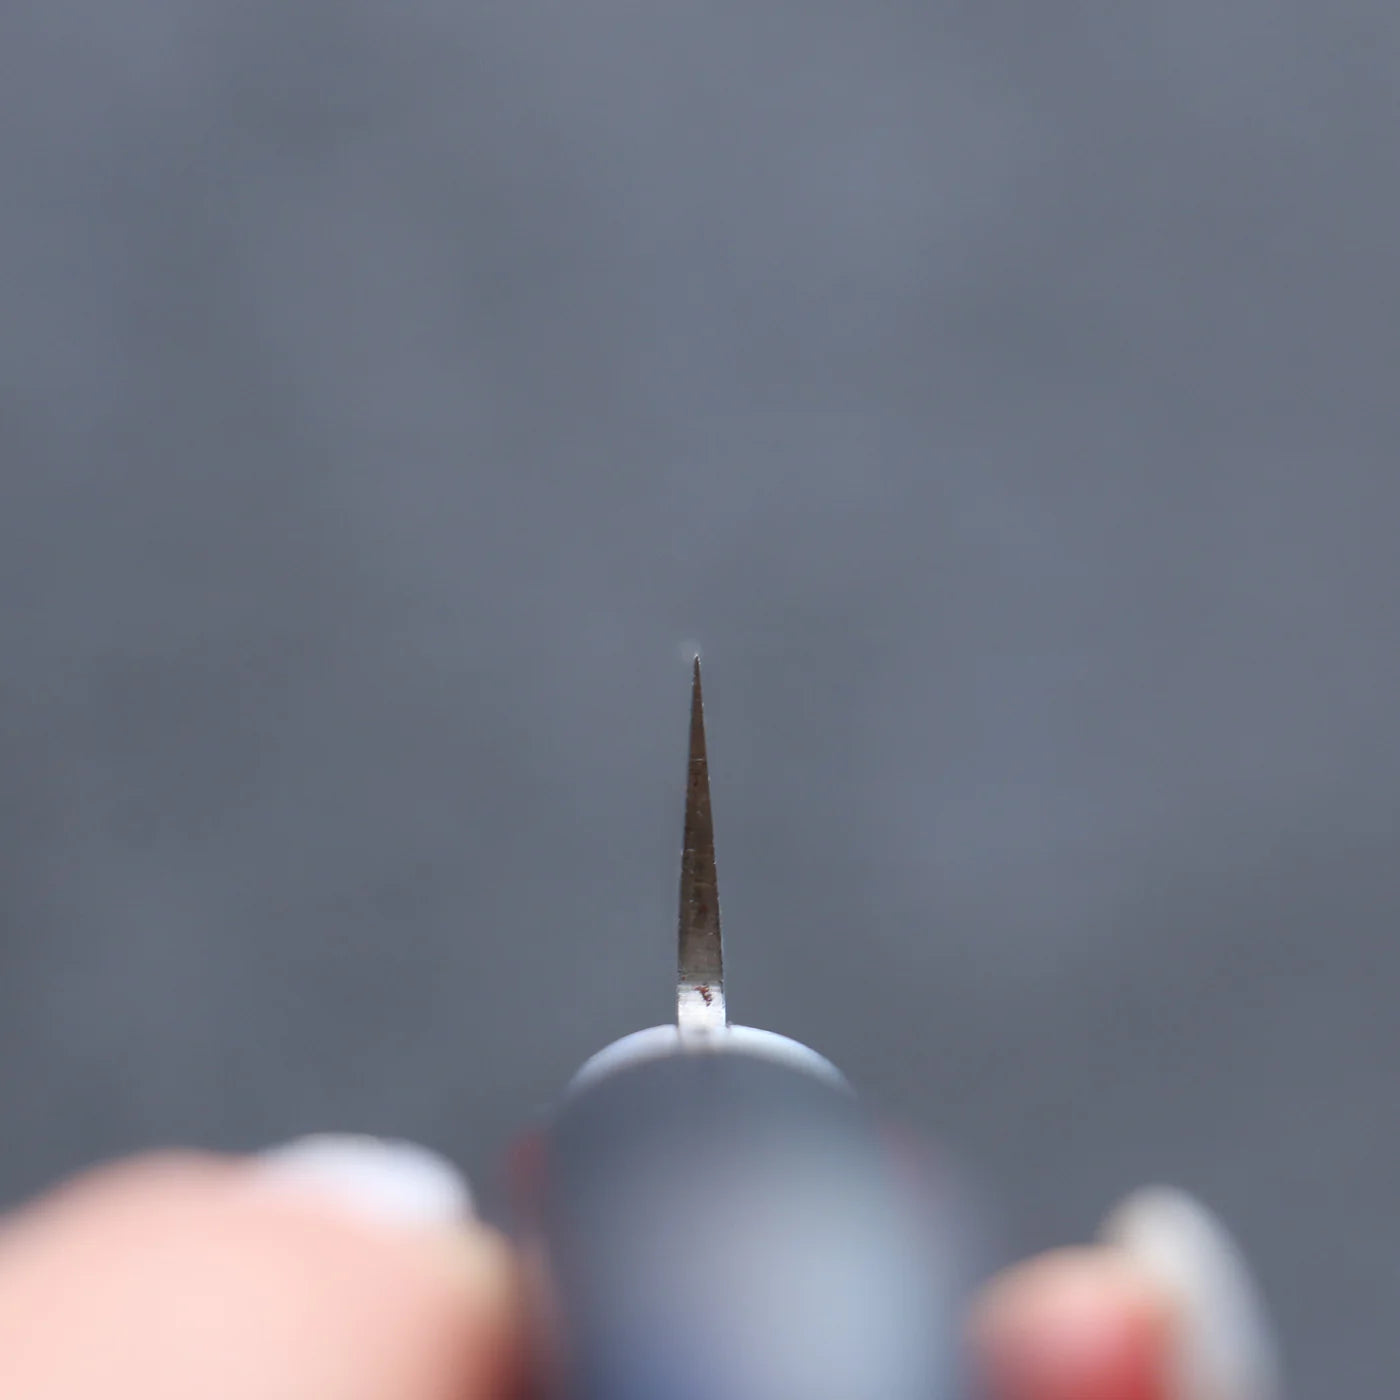 Superblauer Stahl der Marke Seisuke. Kleines Mehrzweckmesser. Kleines japanisches Messer. 145 mm Griff aus rotem und schwarzem Sperrholz